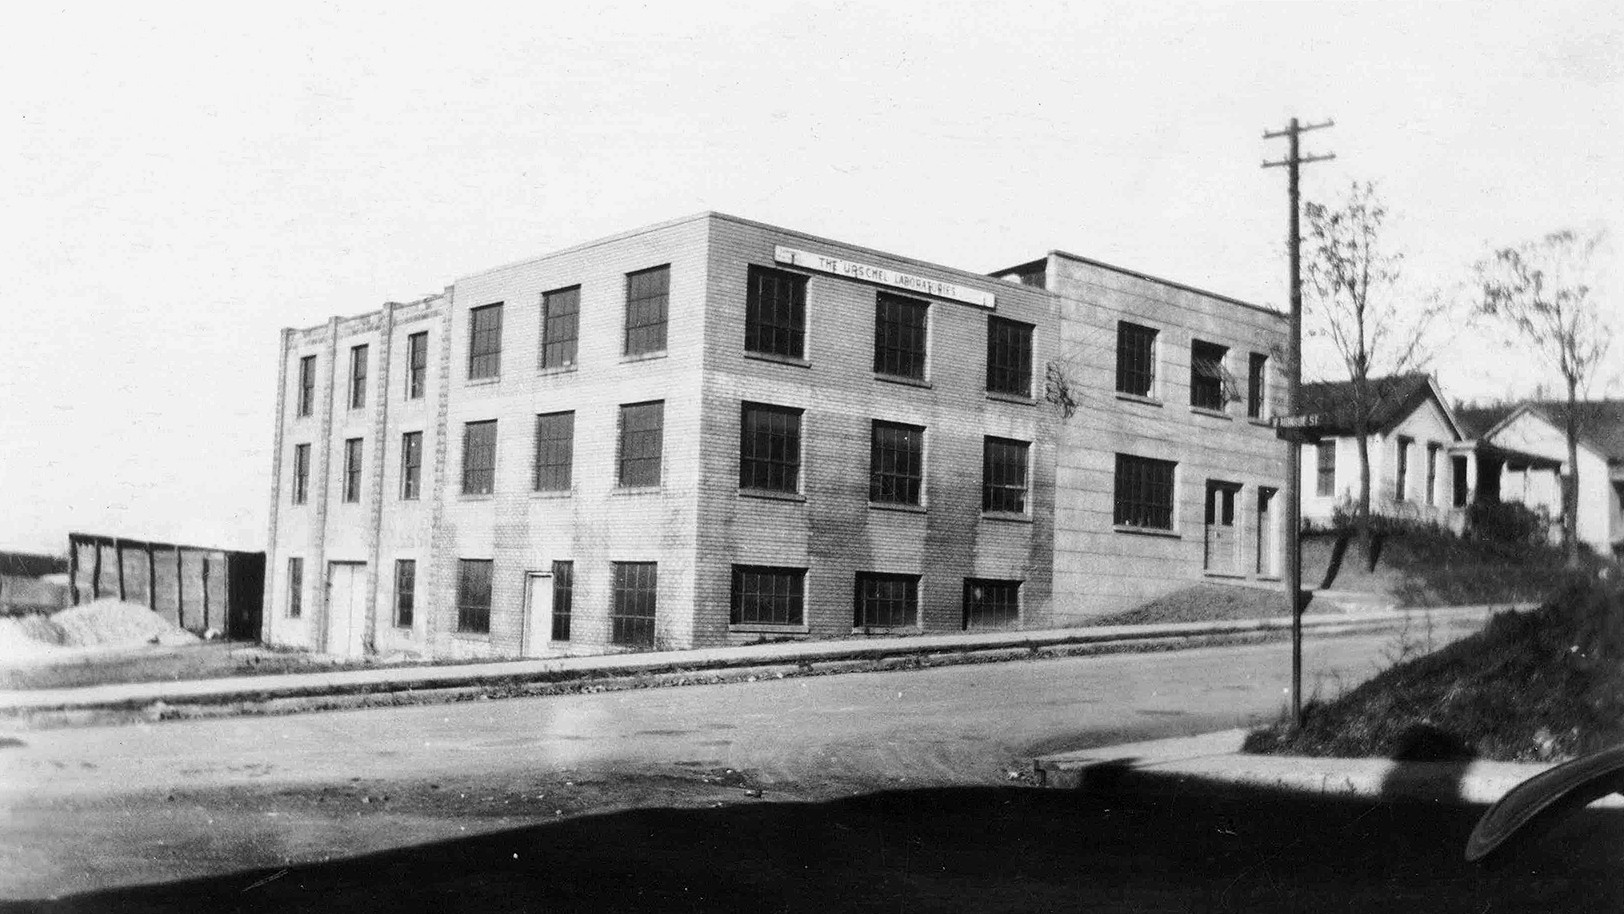 Le bâtiment d'origine de l'usine et son extension, le troisième bâtiment expérimental, existent toujours aujourd'hui.